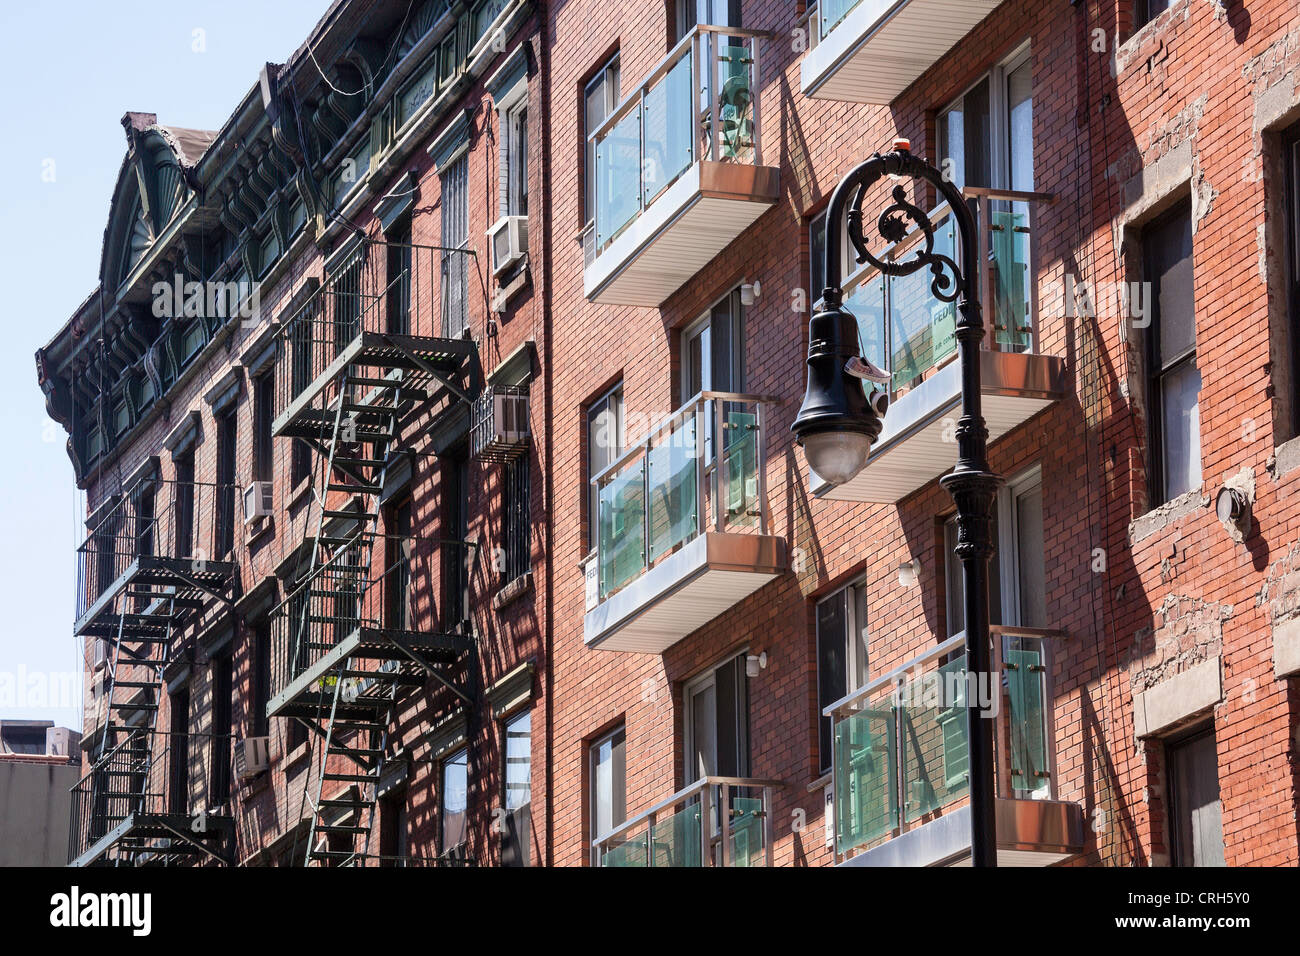 Façades de bâtiments, Lower East Side, NEW YORK Banque D'Images